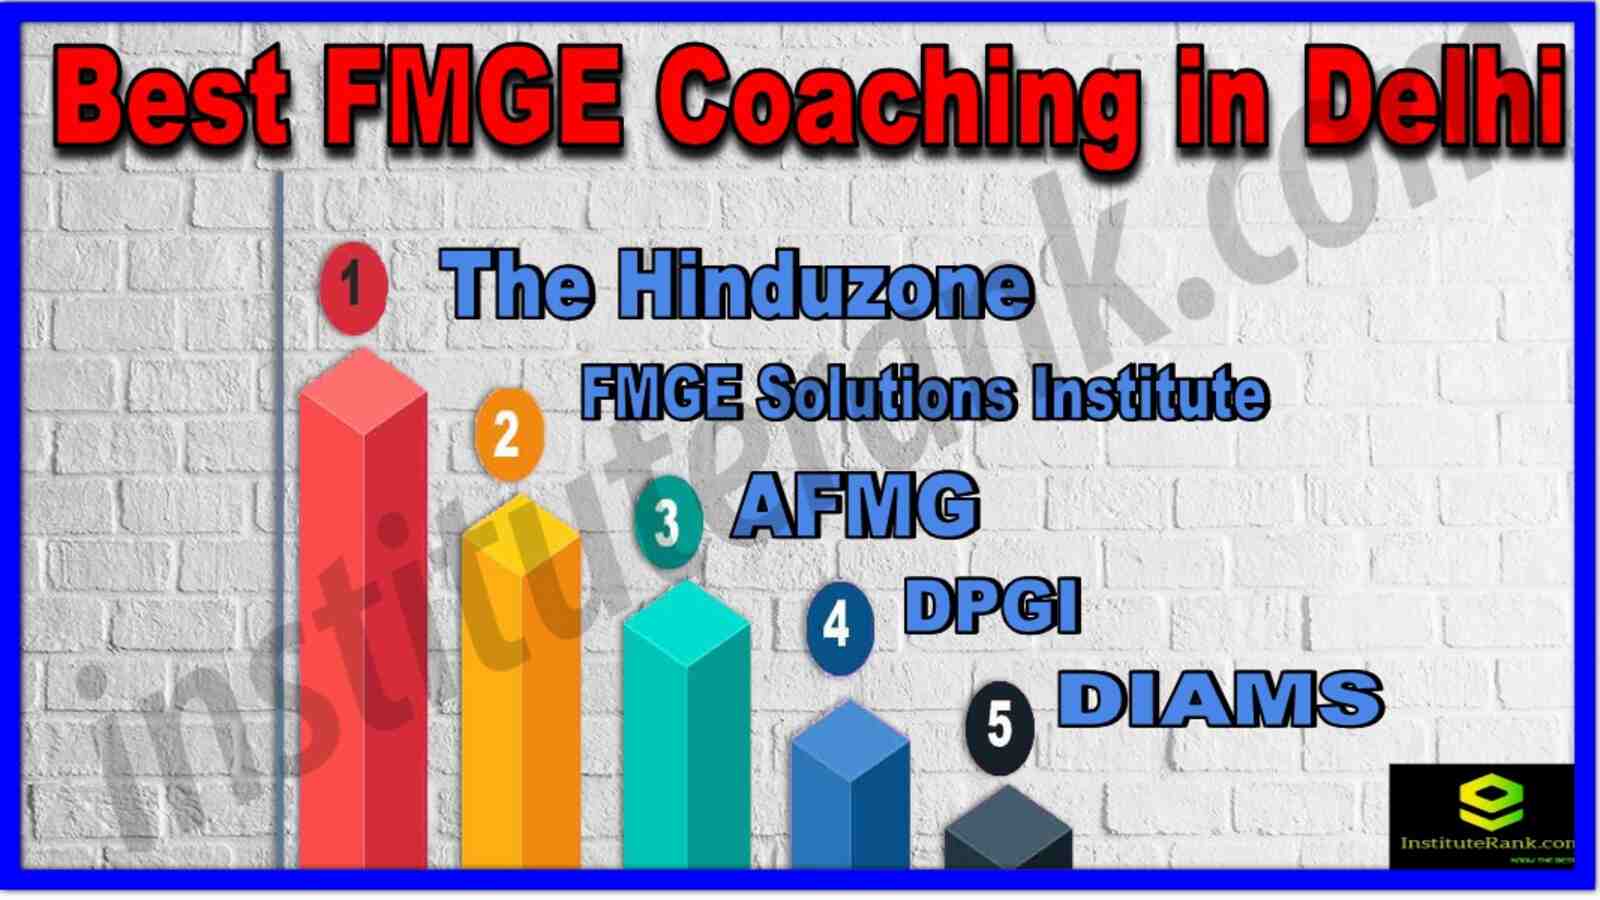 Best FMGE Coaching in Delhi